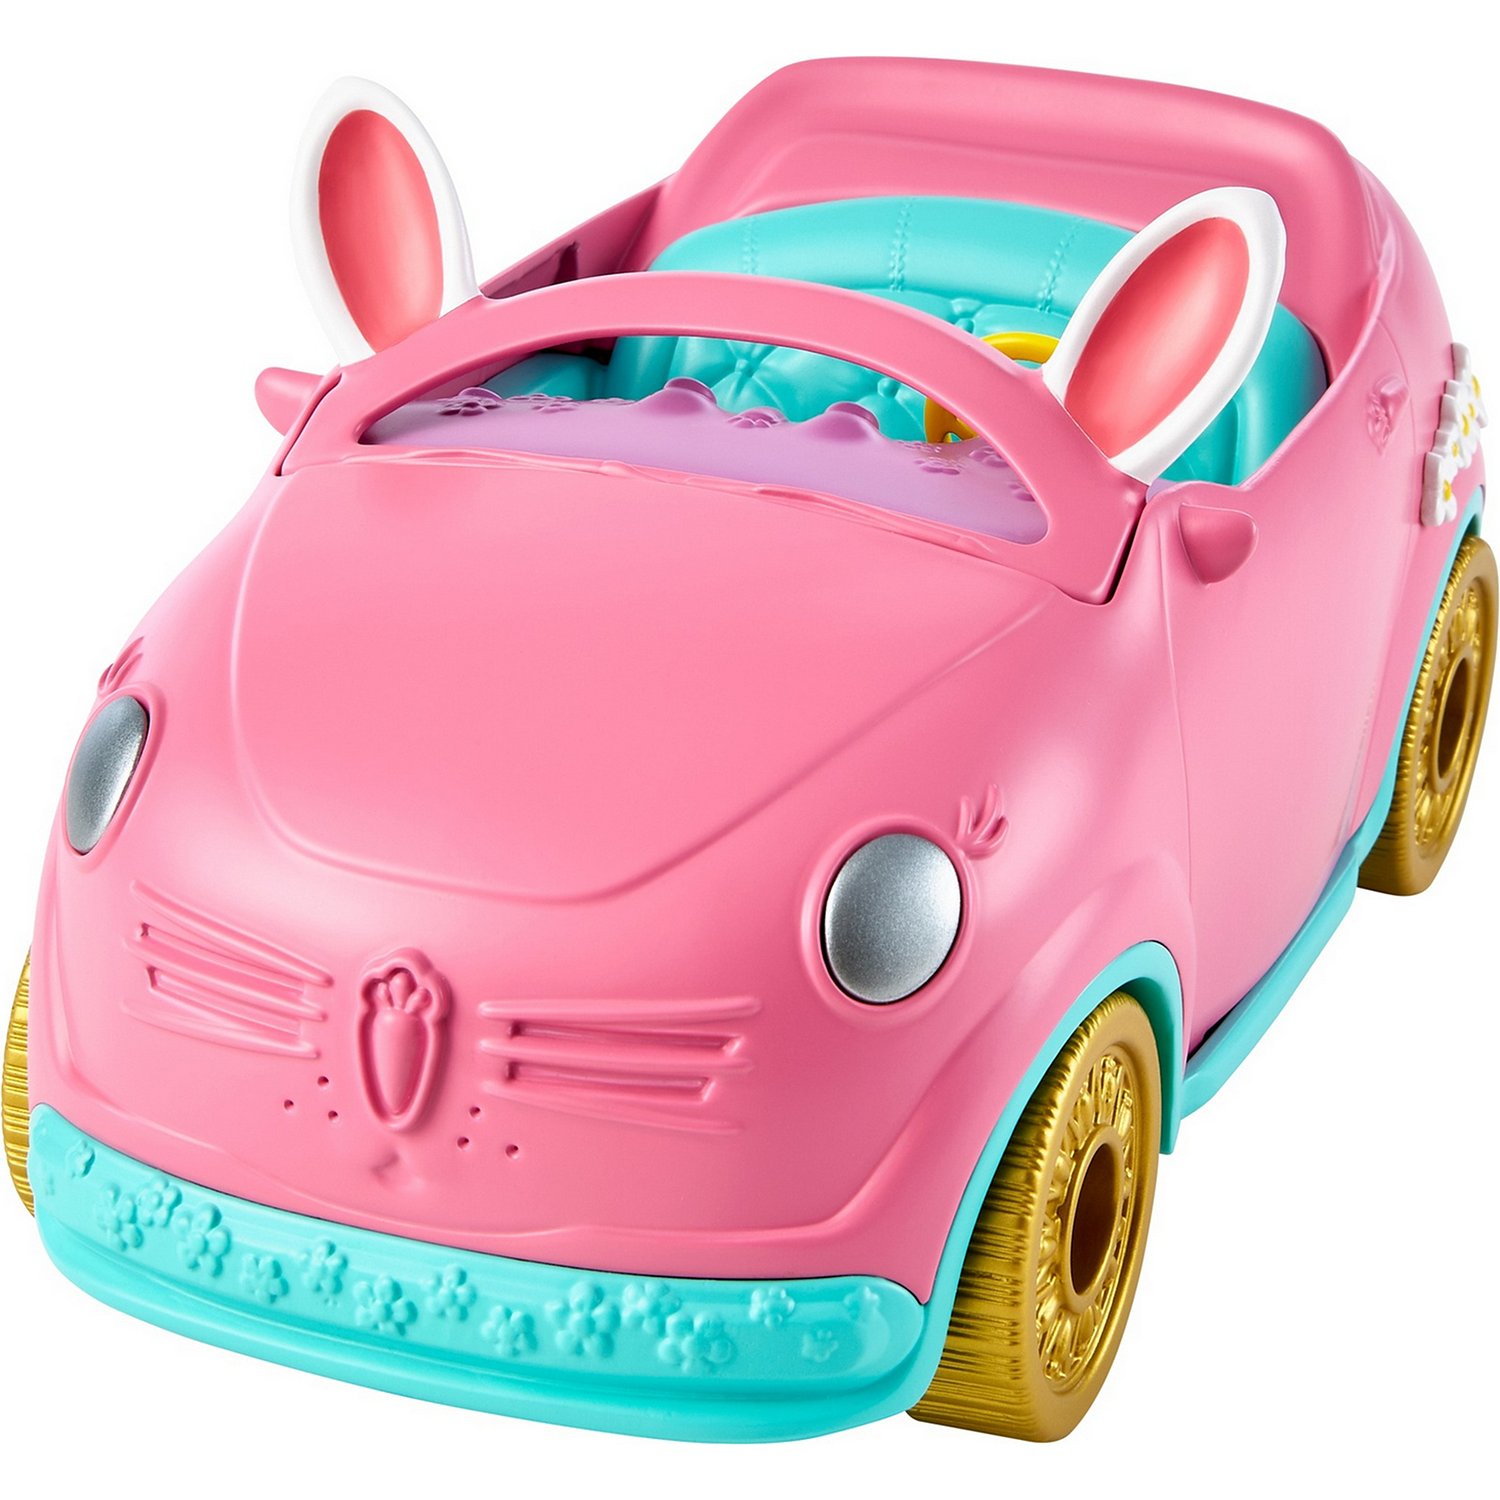 Набор игровой Enchantimals Автомобиль Бри Кроли с куклой и аксессуарами HCF85